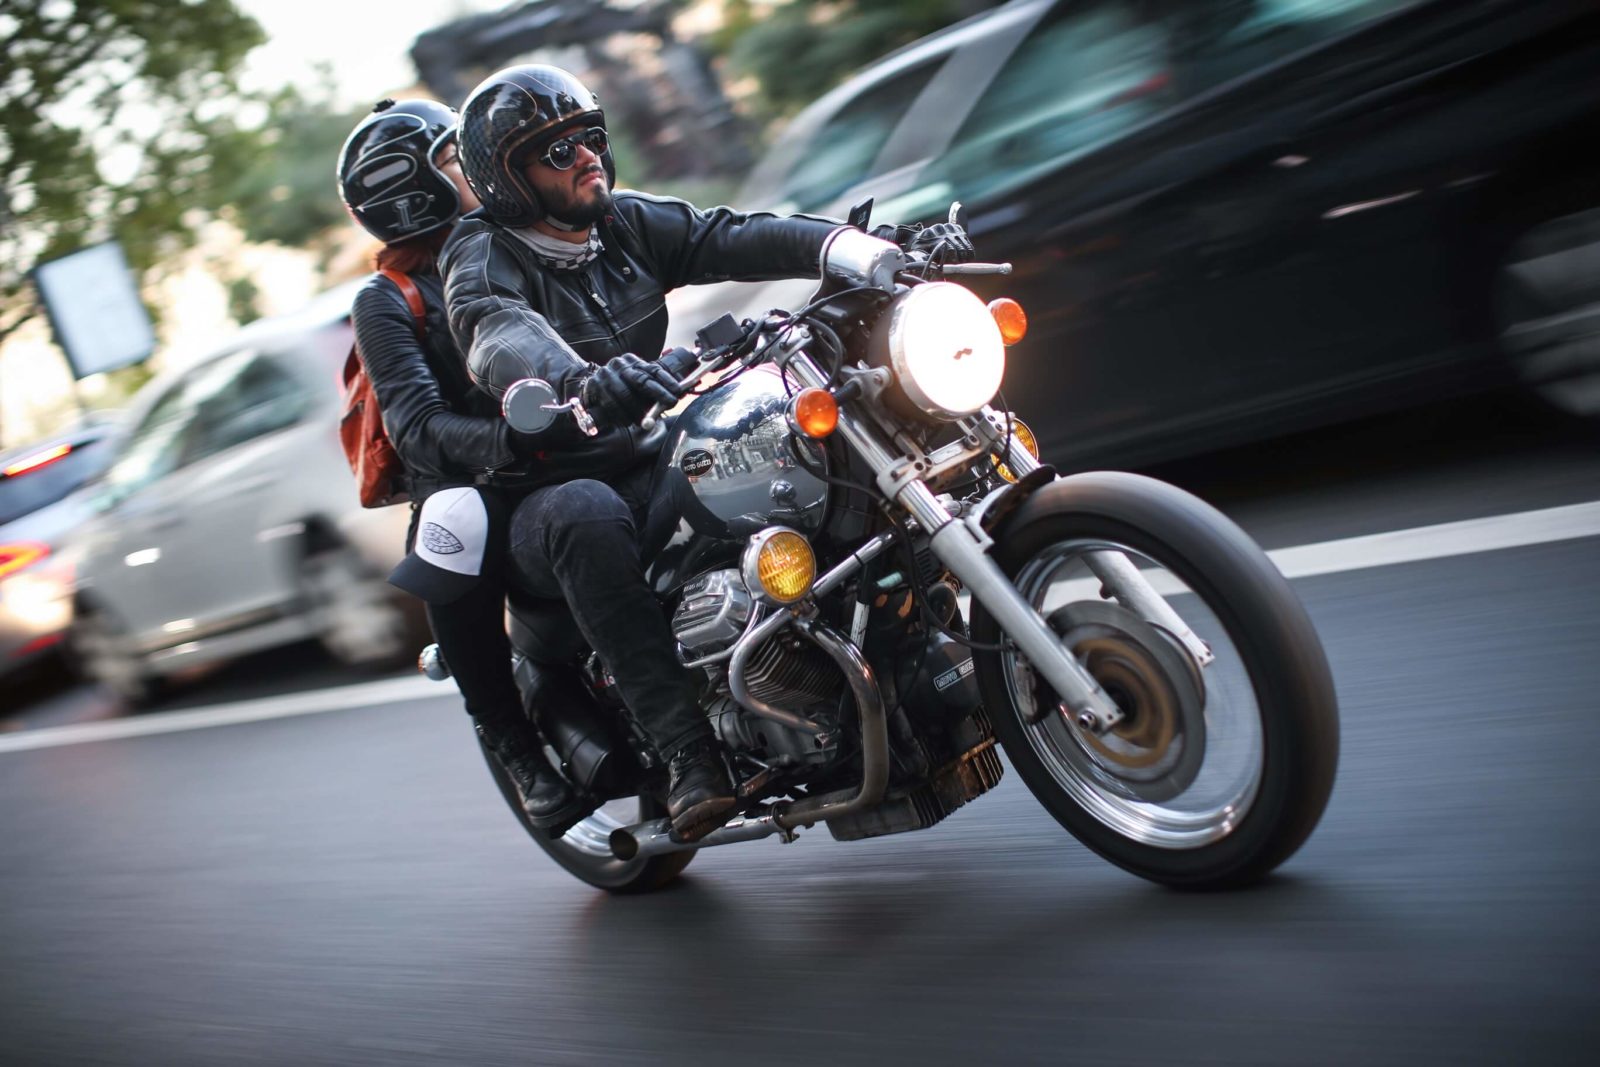 Lionel beylot photo moto Guzzi cafe racer paris bastille